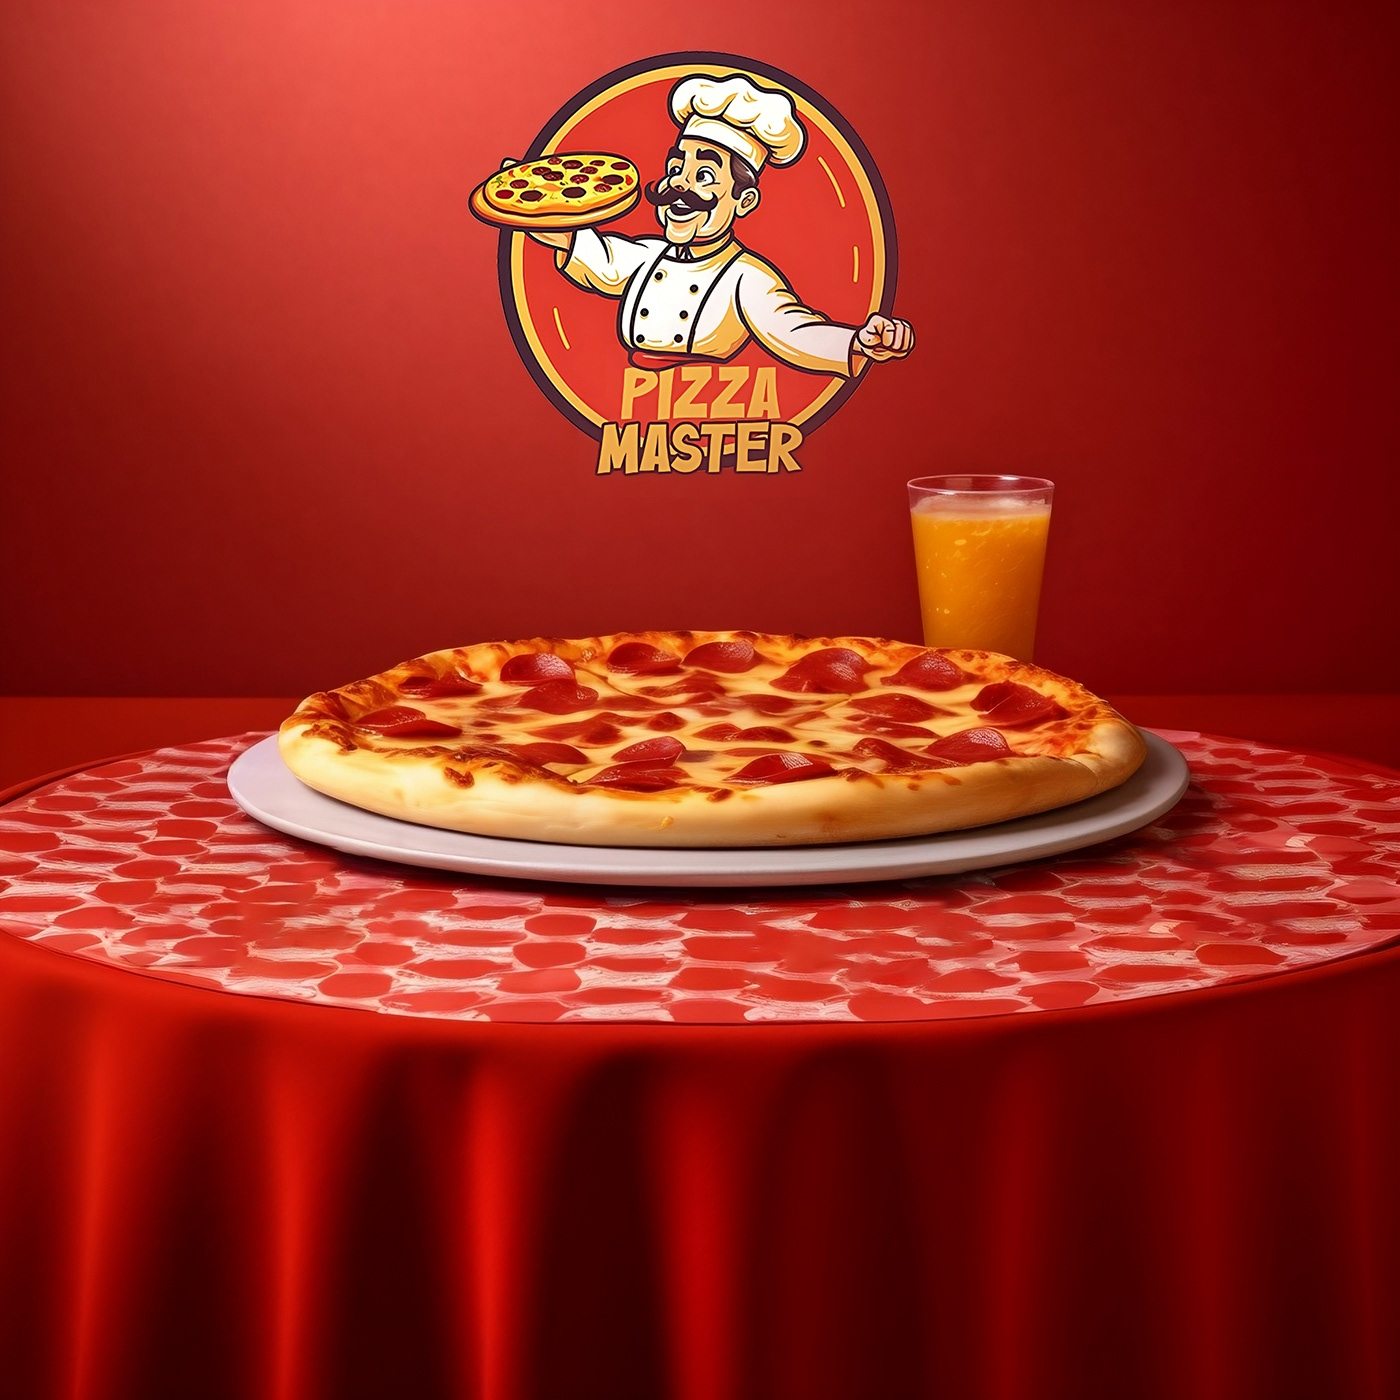 brand identity branding  identity Logo Design Pizza pizza brand restaurant visual identity logo pizza pizza restaurant